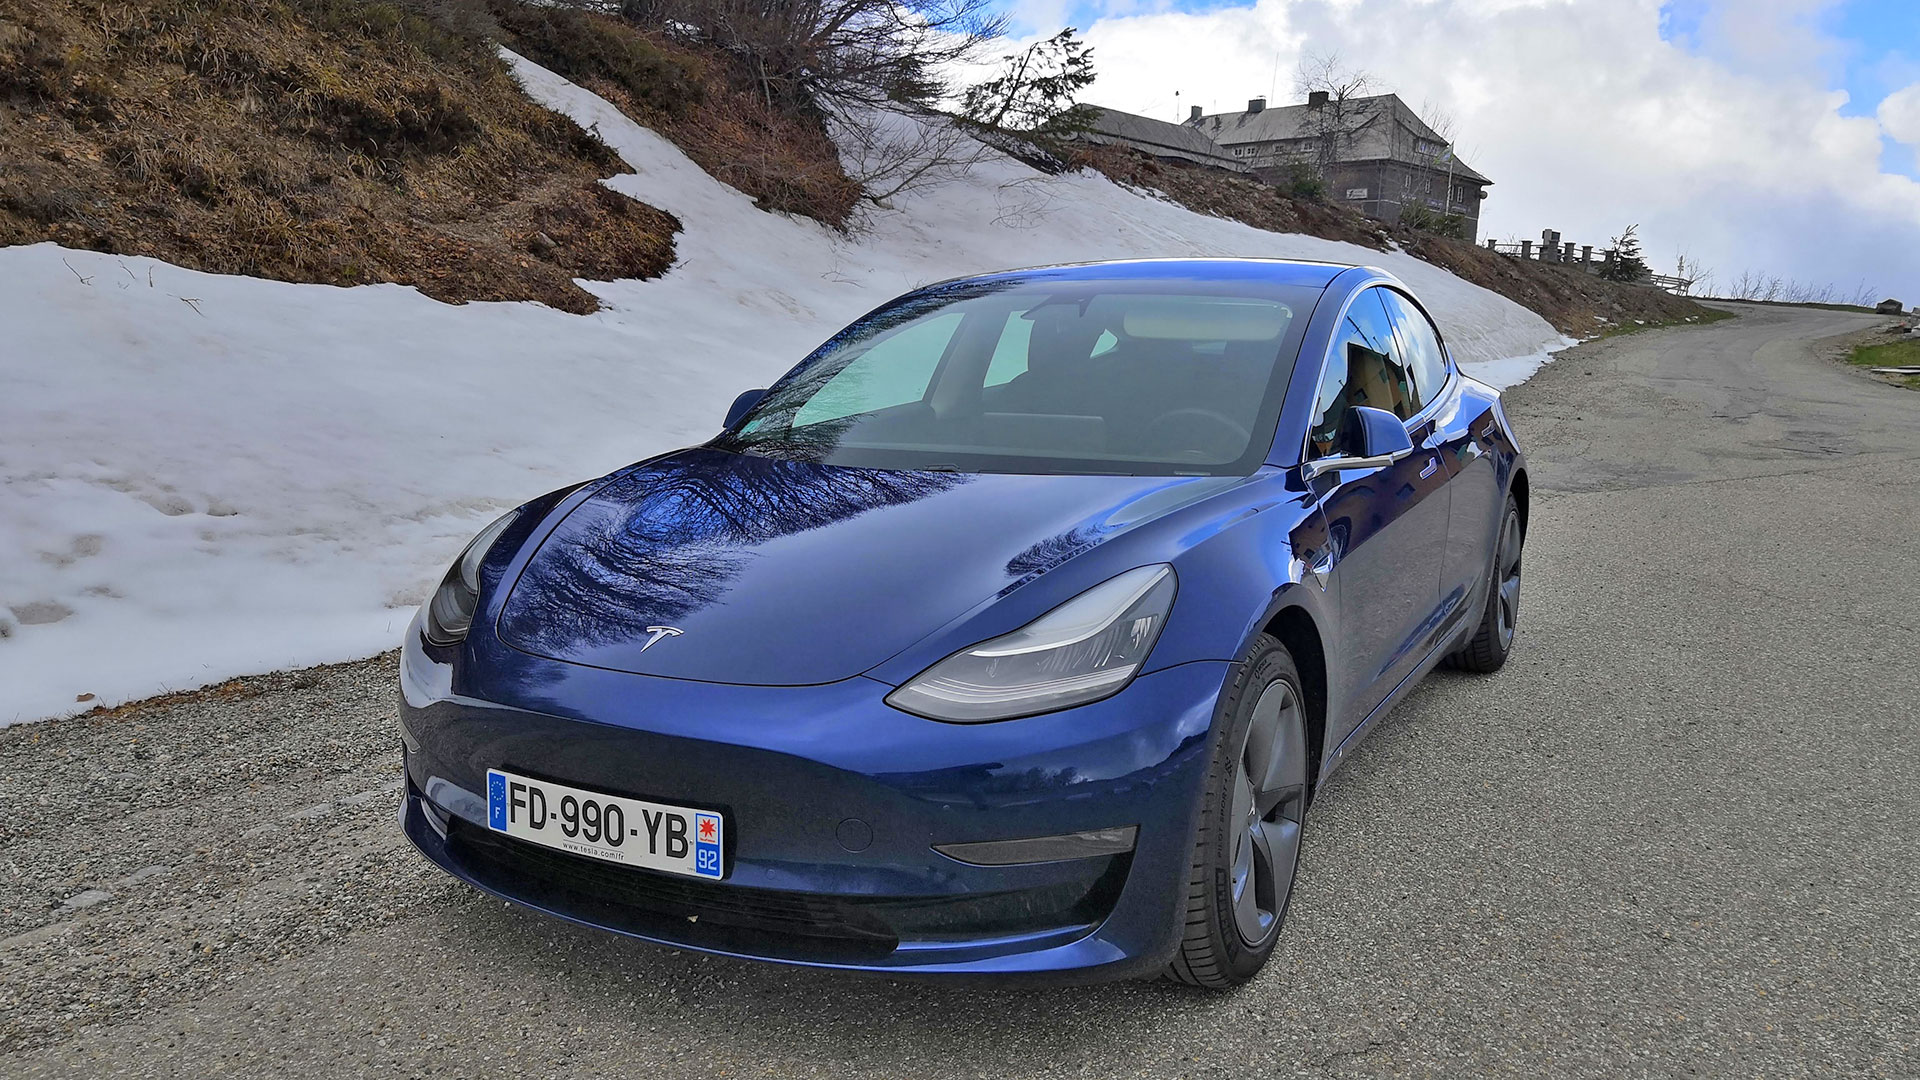 Fiche technique de la Tesla Model 3 : prix, autonomie, performance